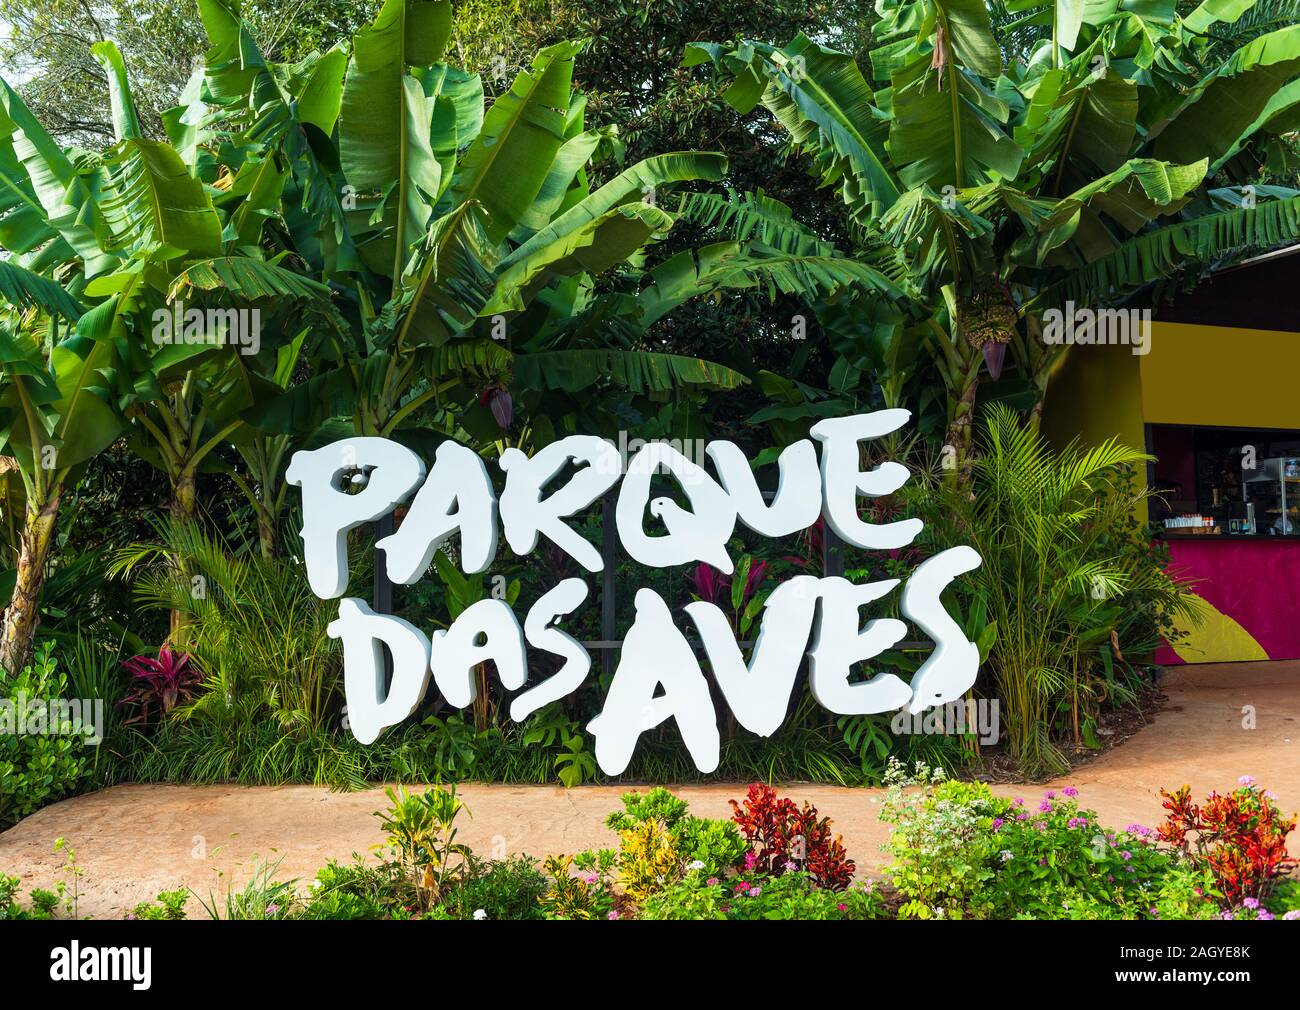 BIRD PARK IGUAZU, Brasilien - 22. JUNI 2019: 3D Buchstaben mit der Inschrift "Parque das Aves' Stockfoto